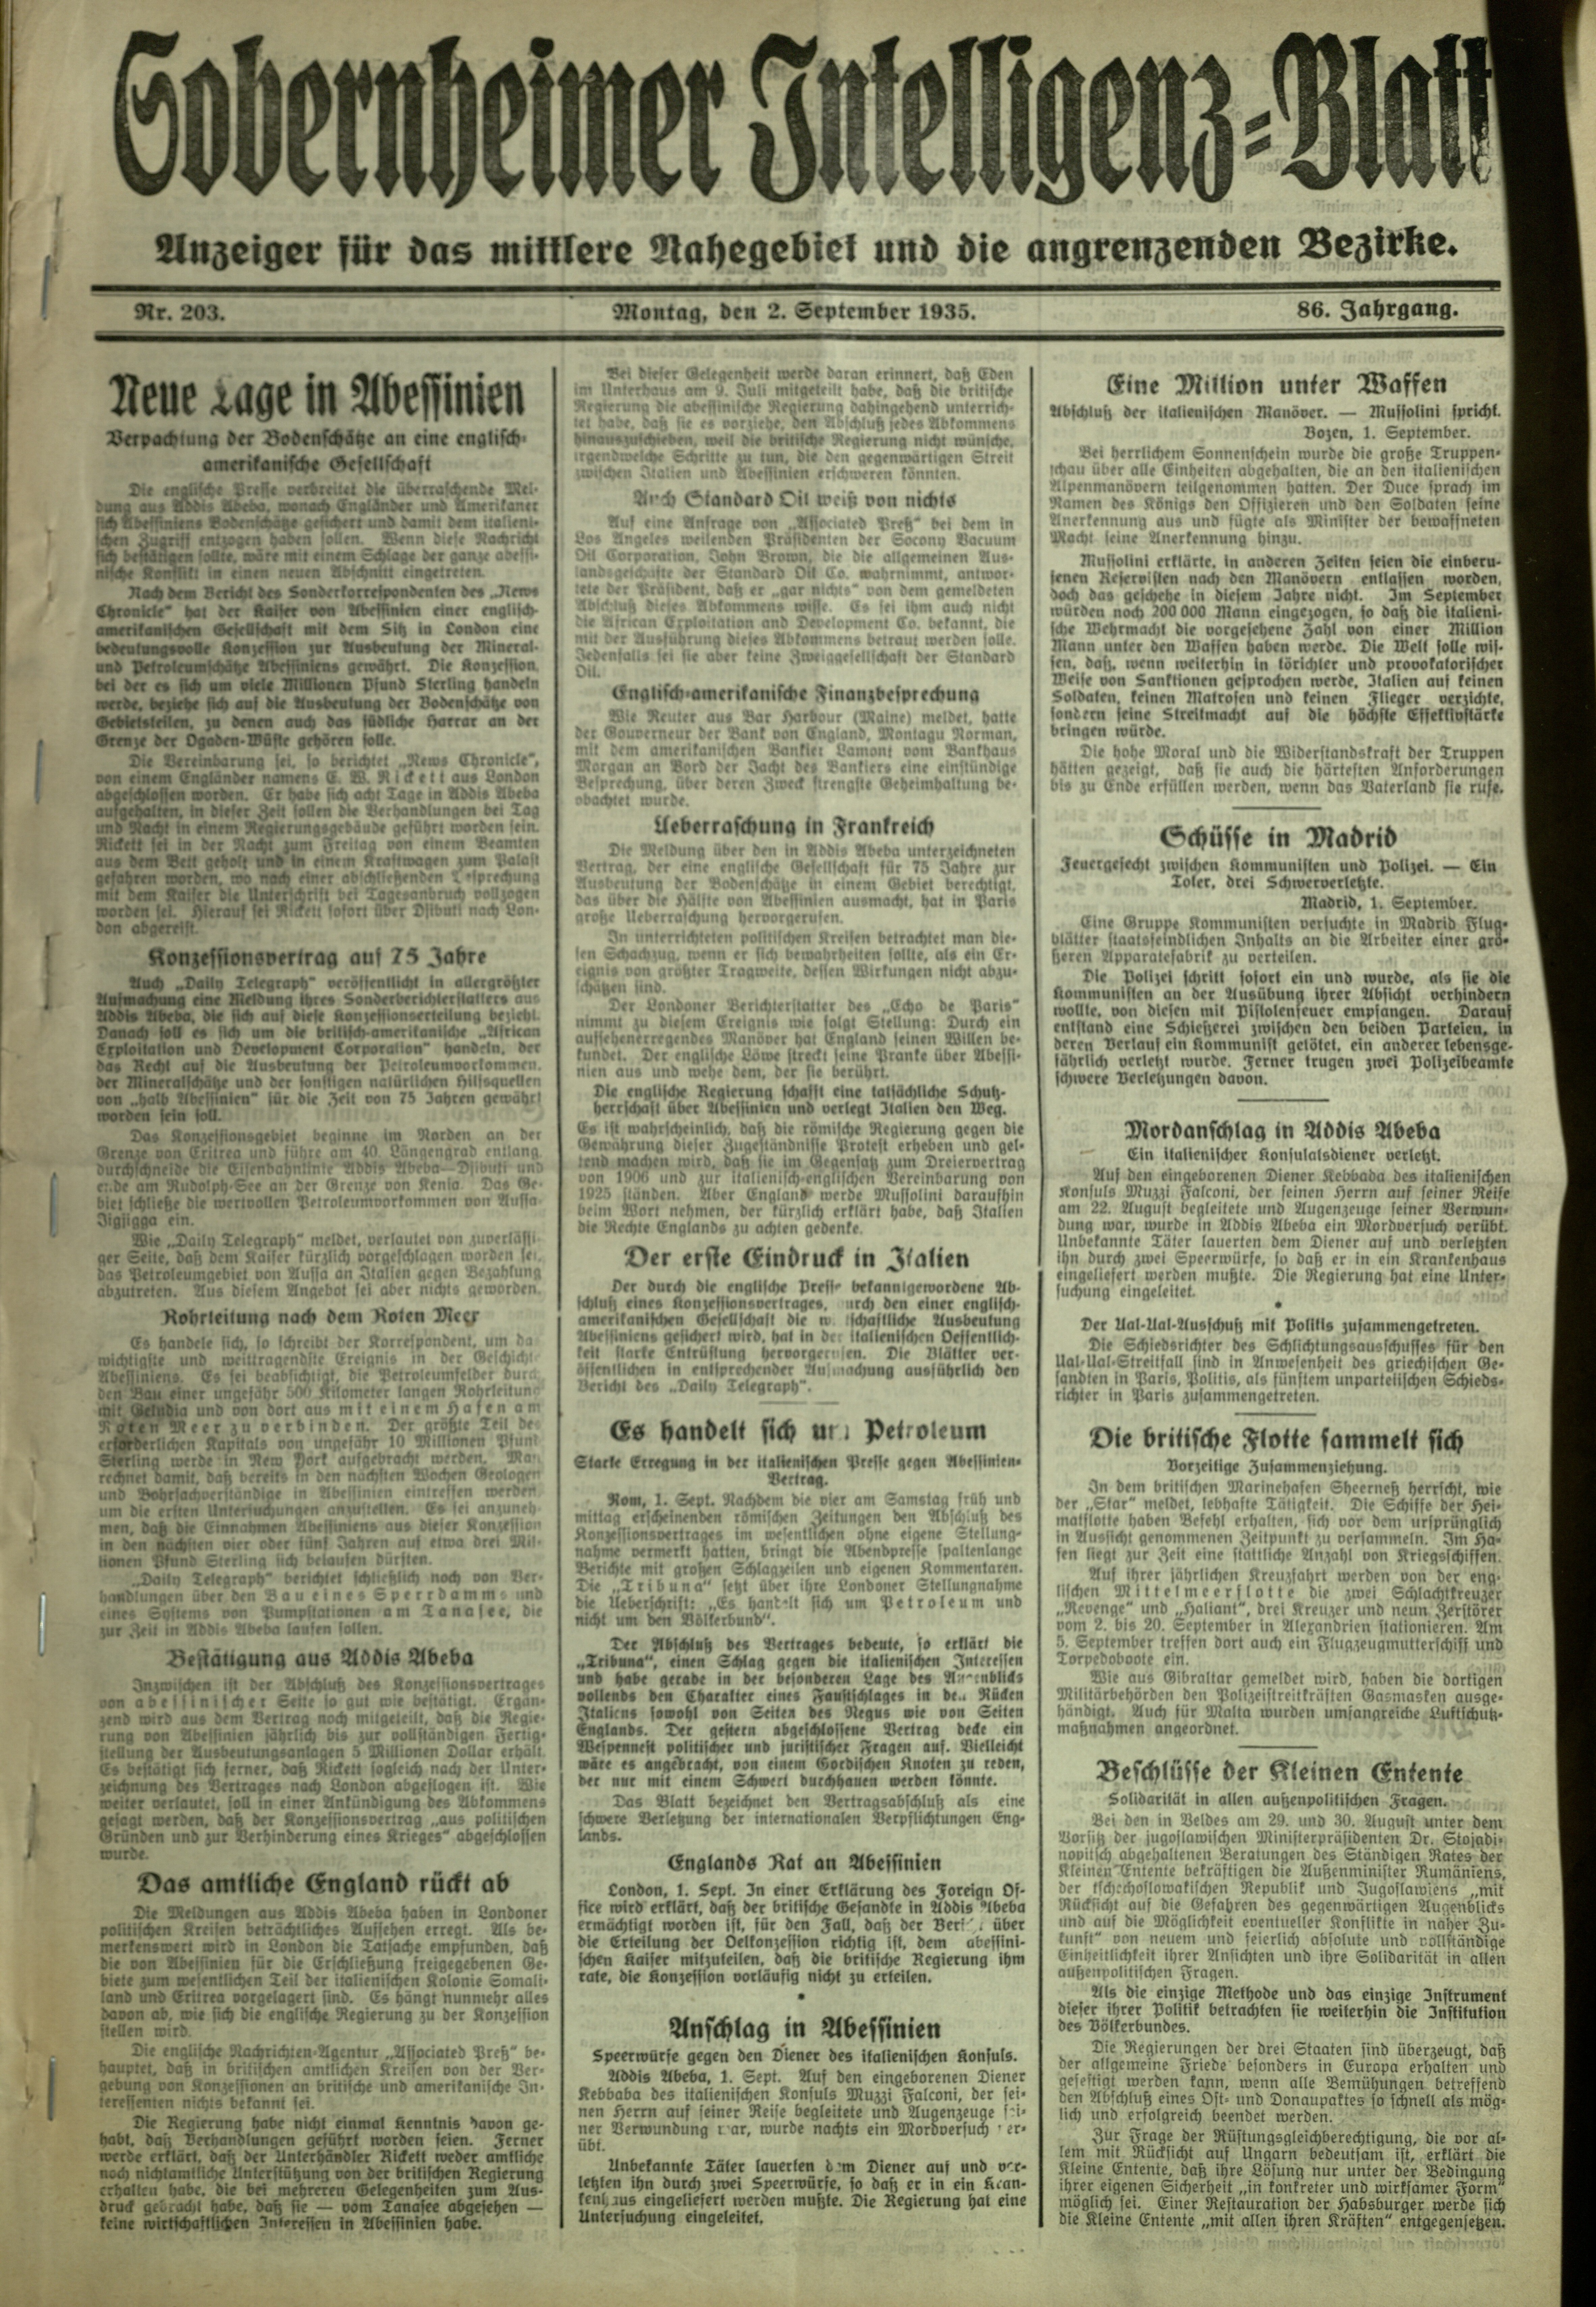 Zeitung: Sobernheimer Intelligenzblatt; September 1914 , Jg. 65, Nr. 203 (Heimatmuseum Bad Sobernheim CC BY-NC-SA)